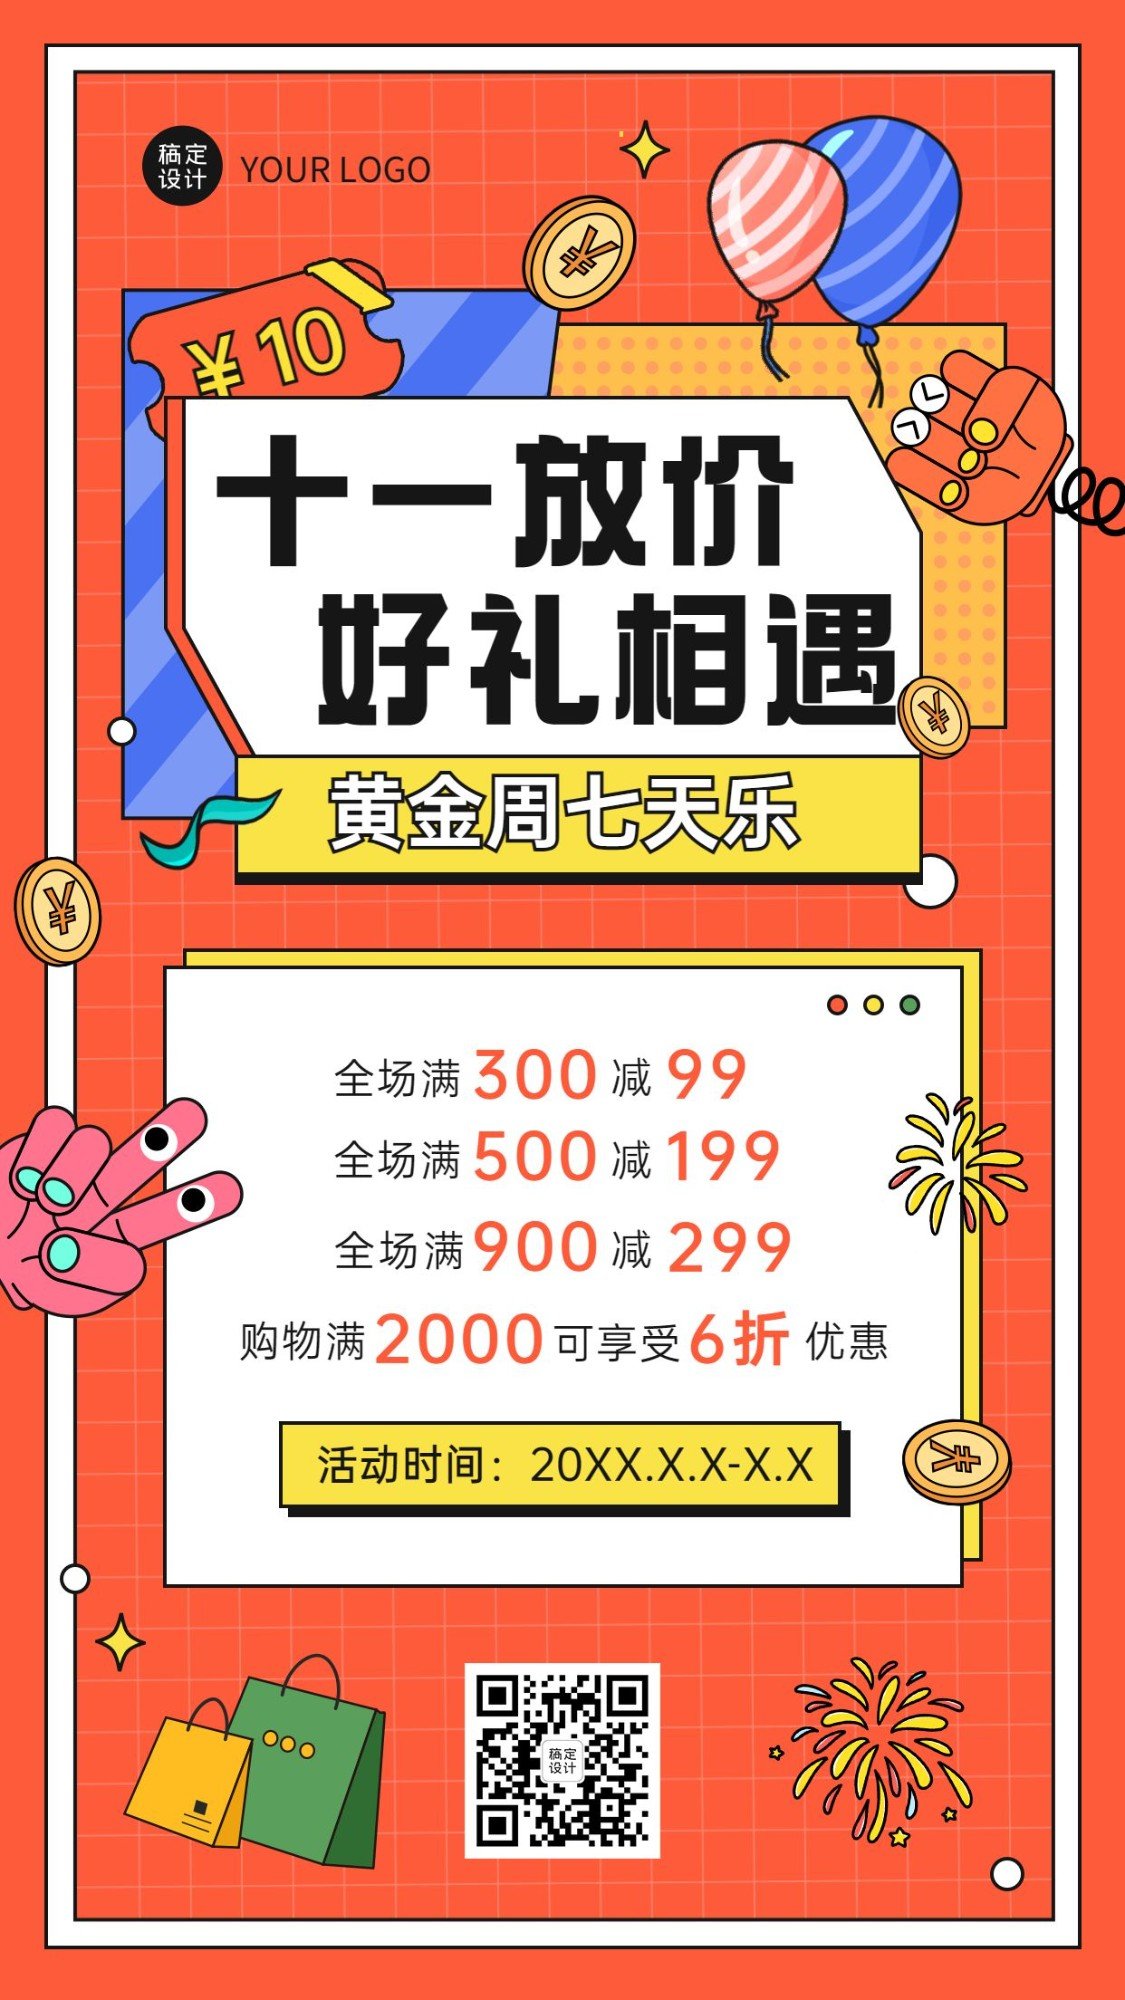 十一国庆黄金周促销活动手机海报